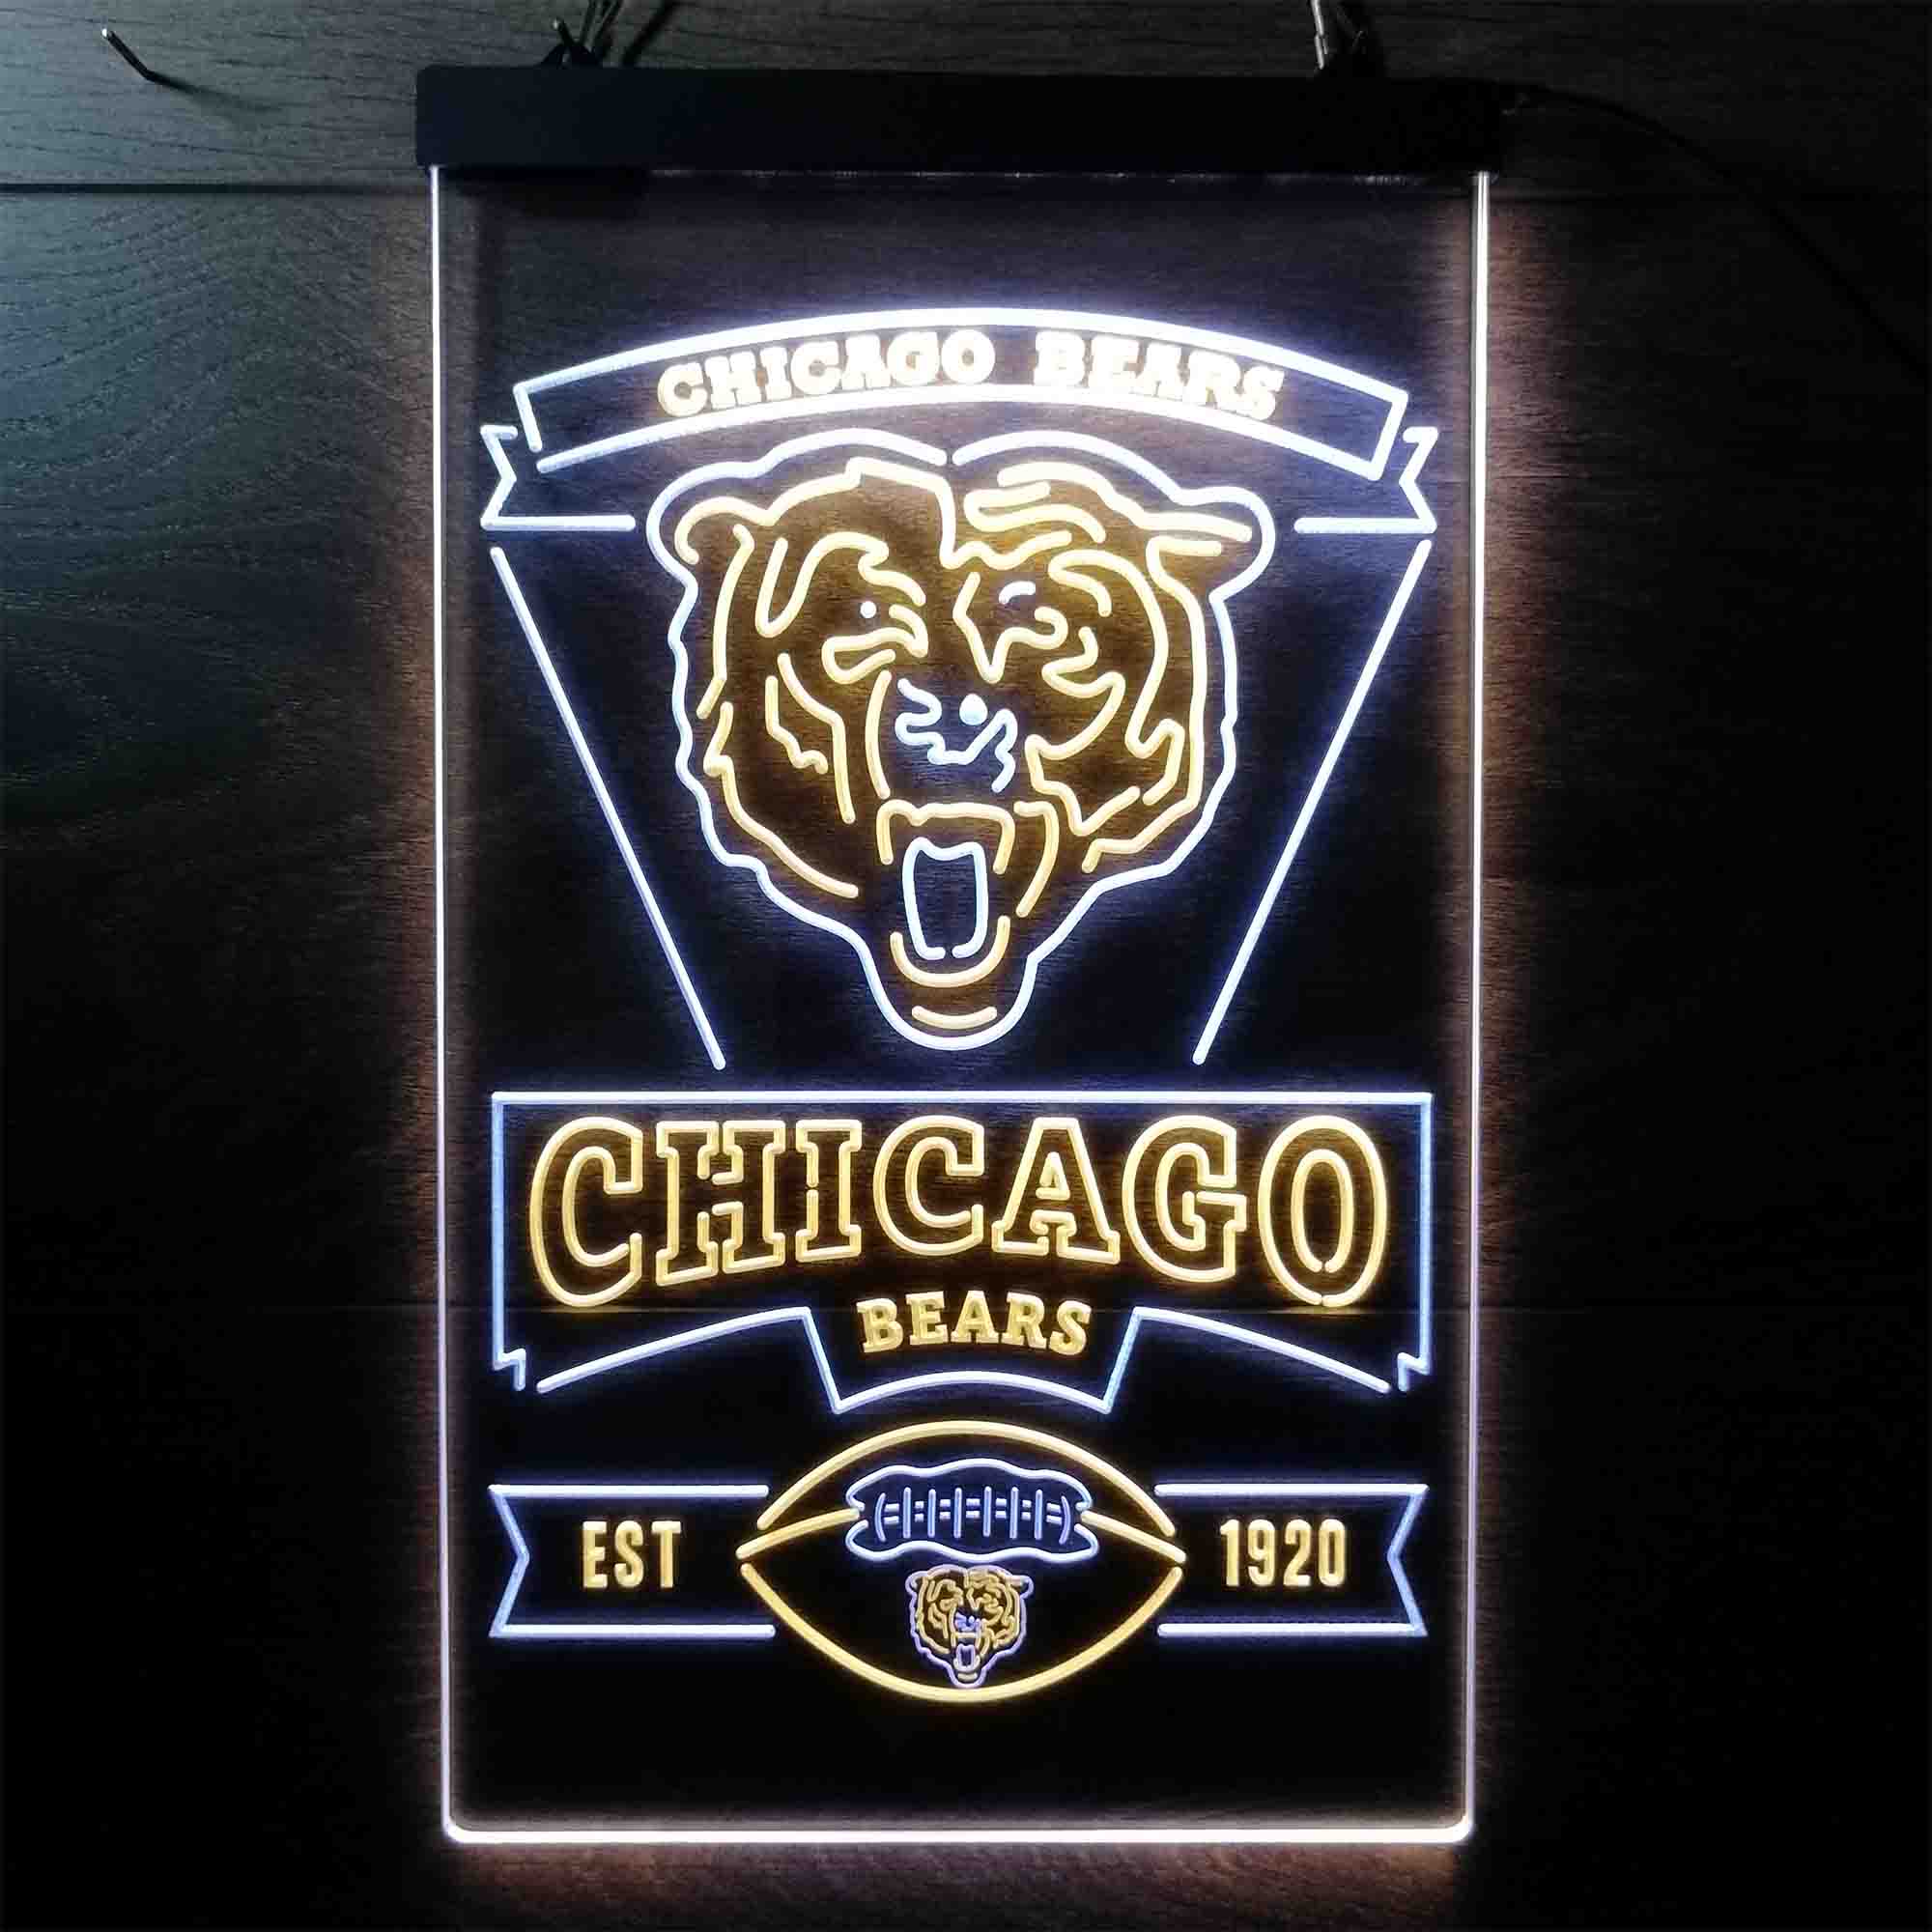 Chicago Bears Est. 1920 Neon-Like LED Sign